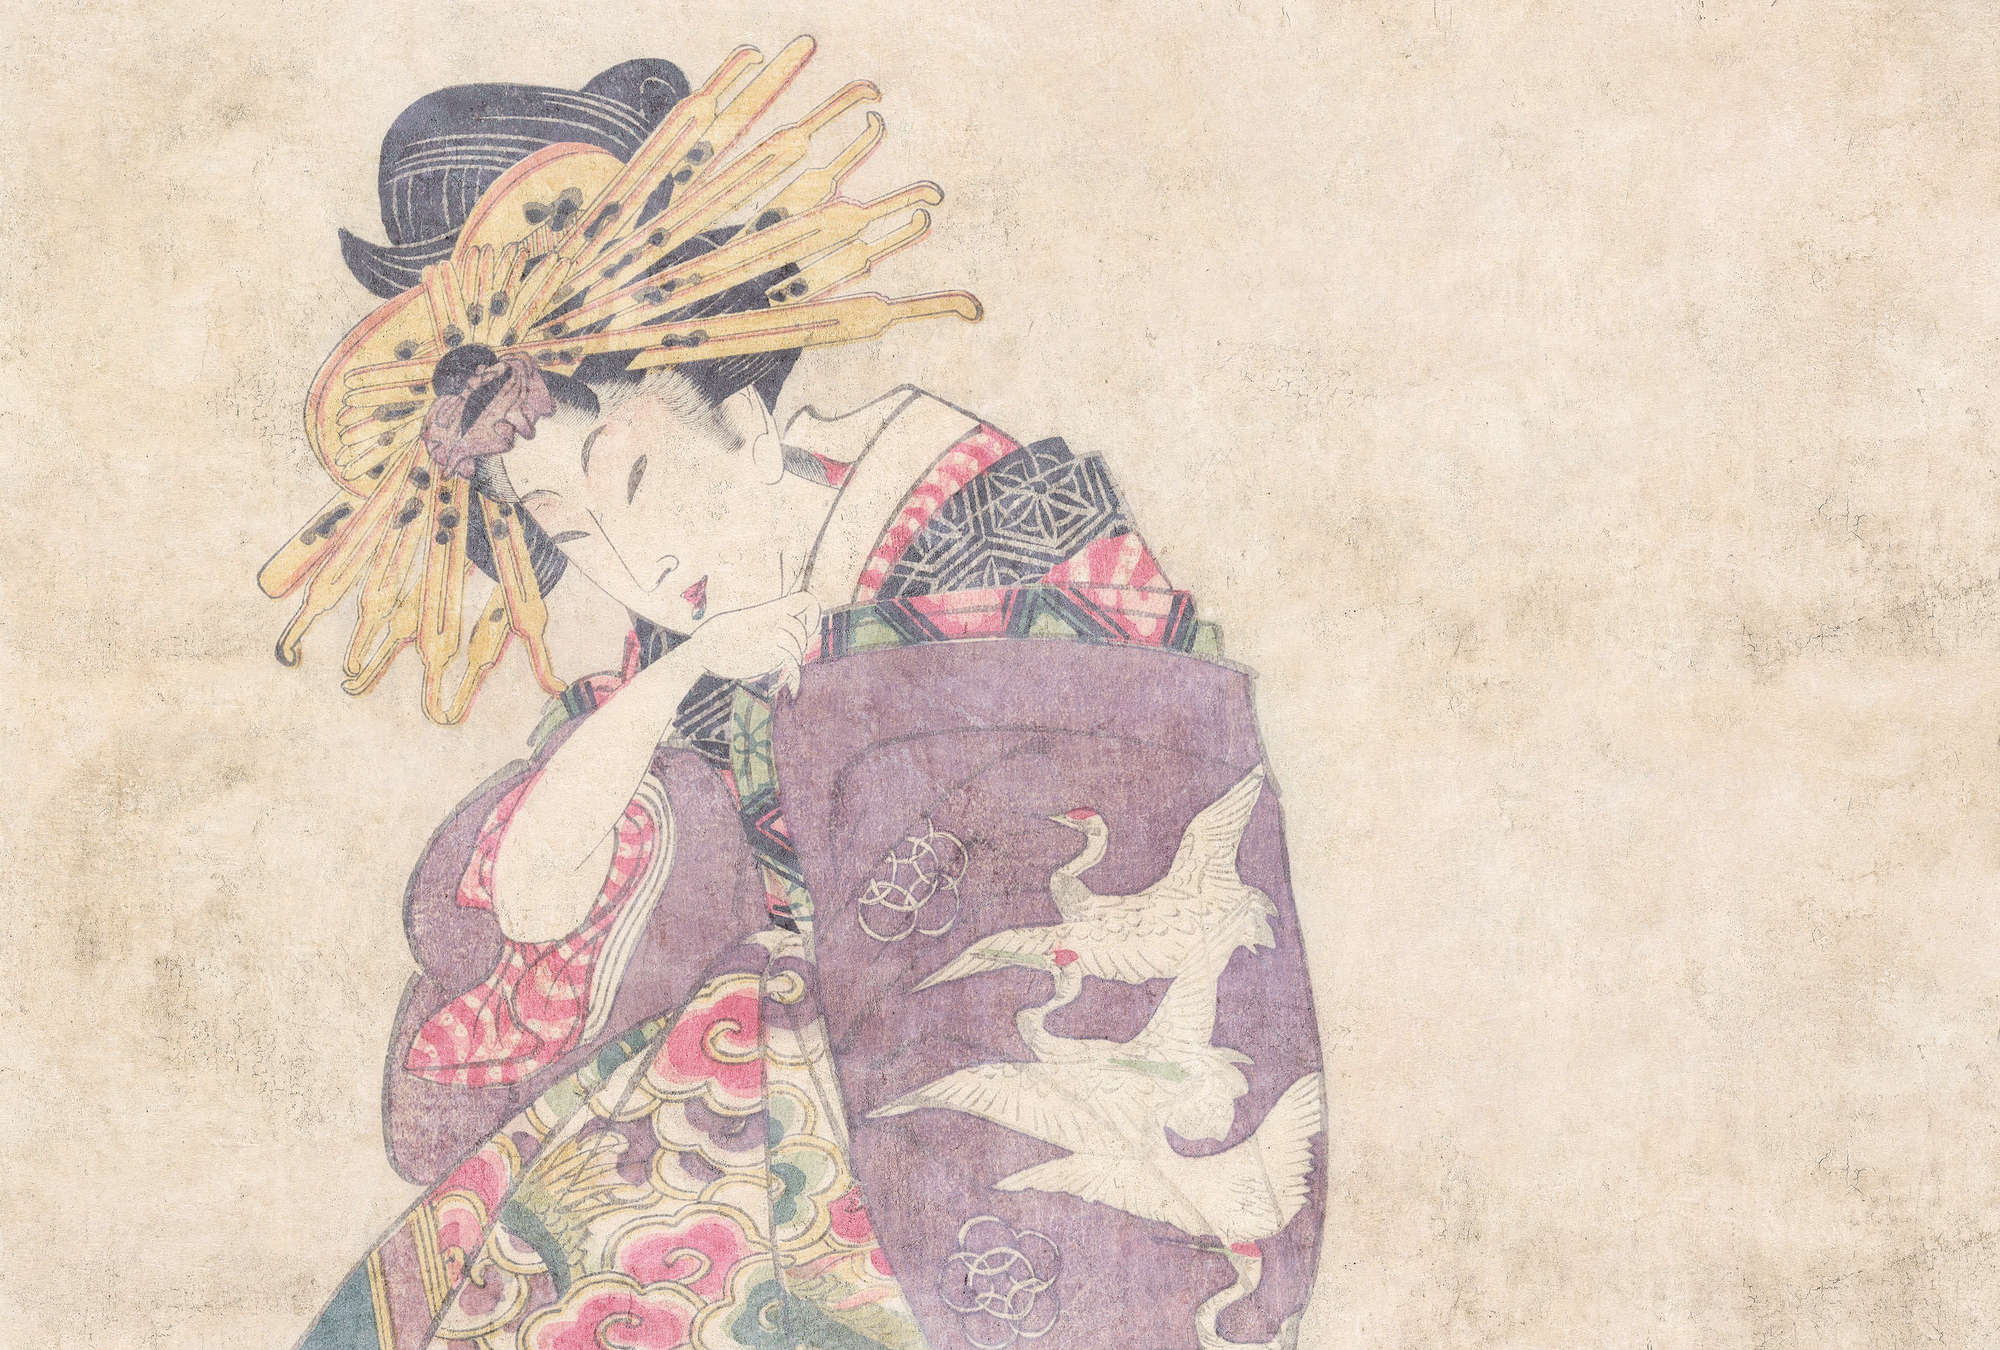             Osaka 1 - papier peint d'art décoratif asiatique de style vintage
        